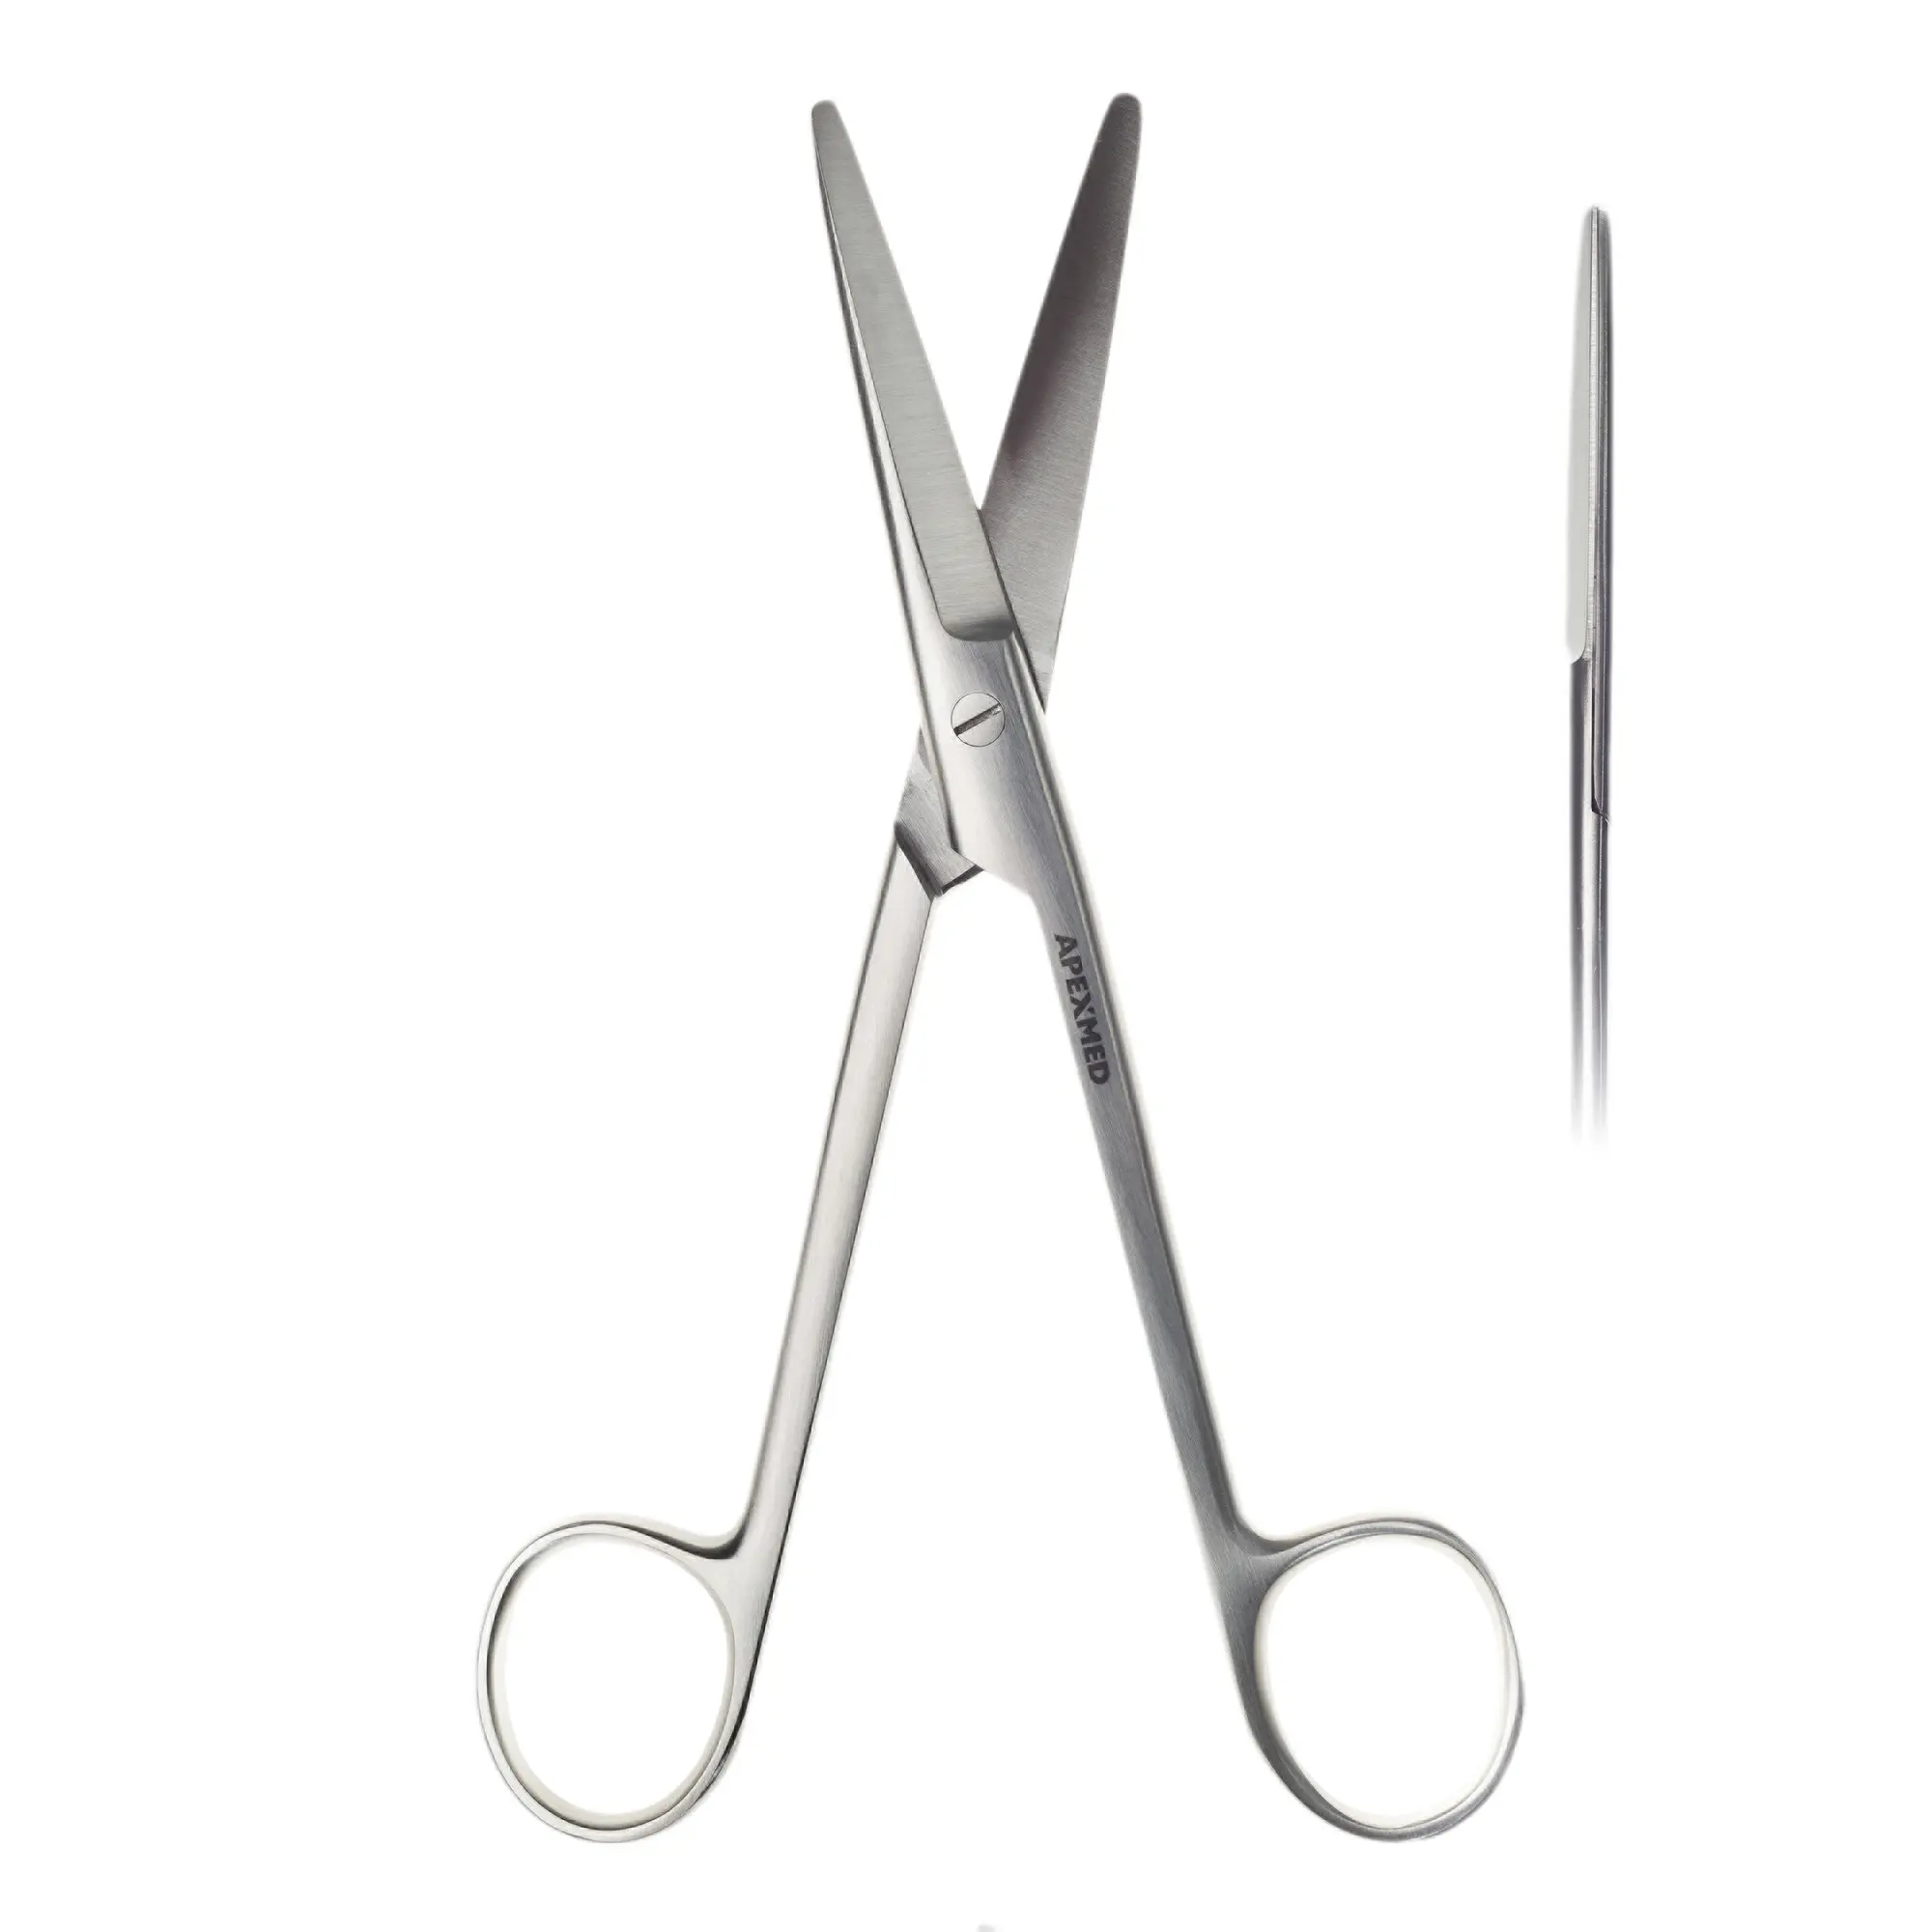 Ножницы хирургические диссекционные Mayo (Майо) тупоконечные, прямые, 170 мм, Apexmed